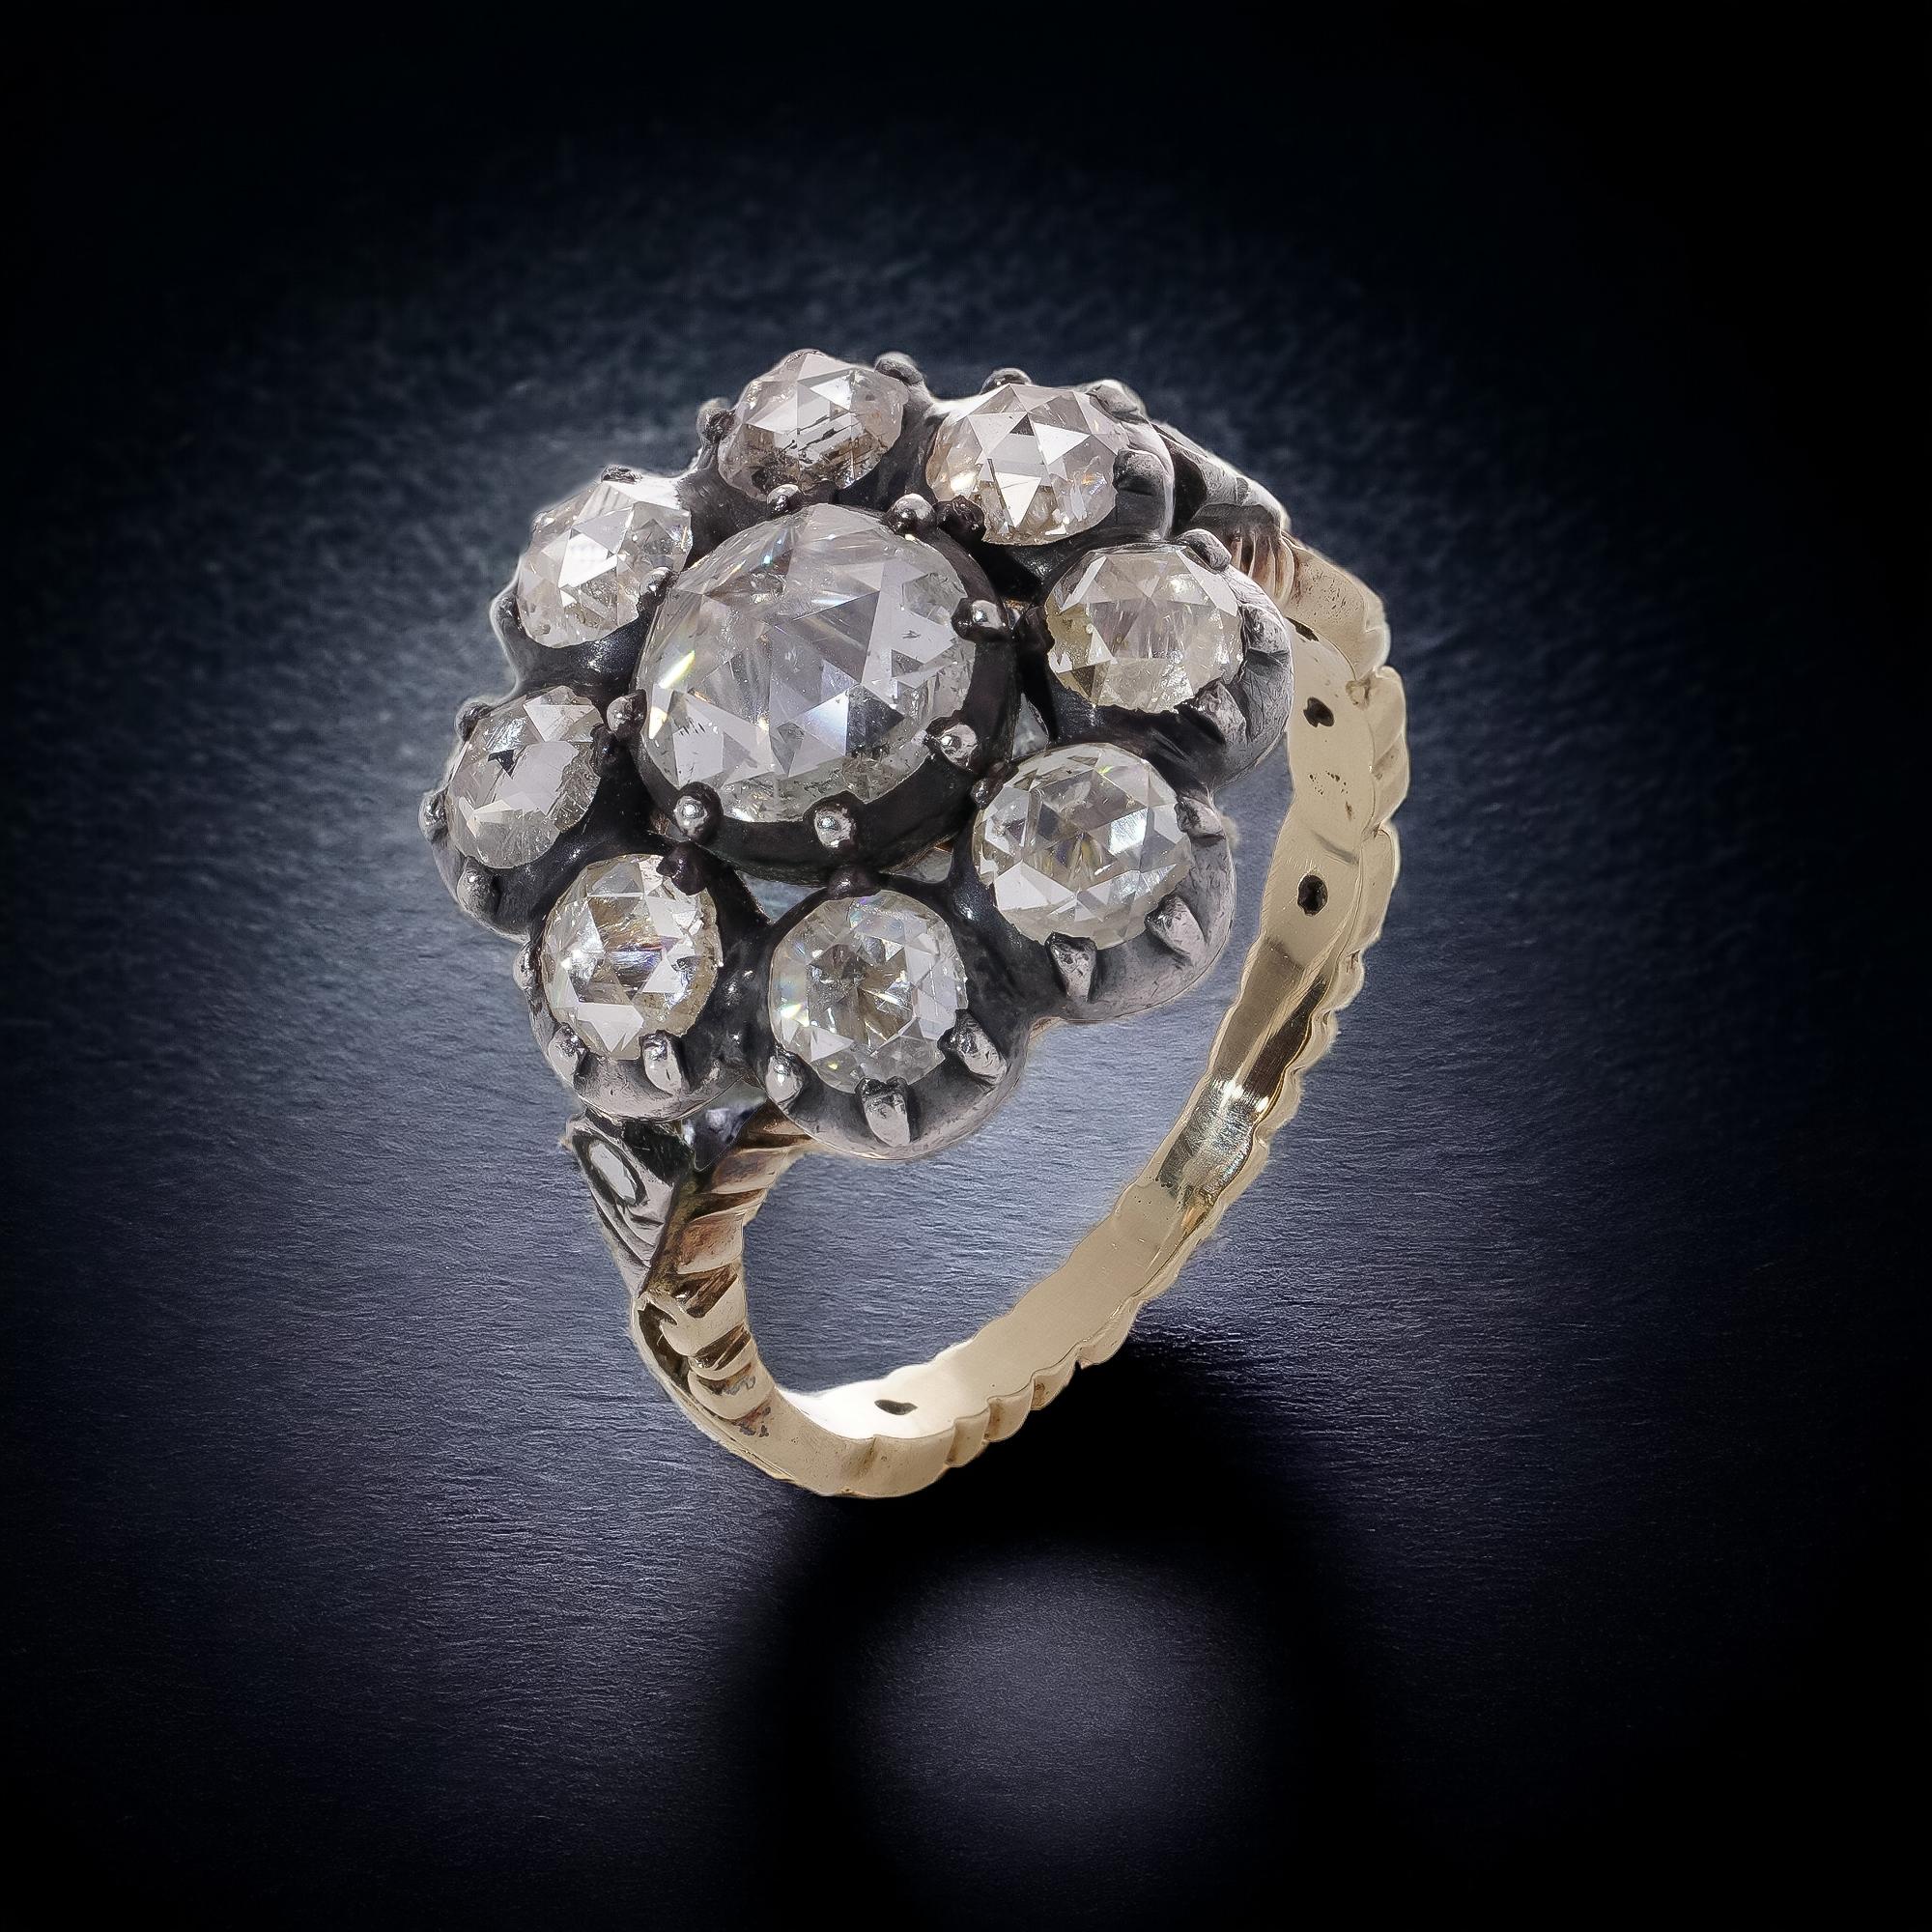 Bague de style géorgien en or jaune 14kt. et argent, 3.12 carats de diamants taillés en rose, marguerite en grappe. 
Le dos de la pierre a été expertisé pour optimiser la brillance du diamant.
X - Rauy a été testé positif pour l'or et l'argent 14kt.